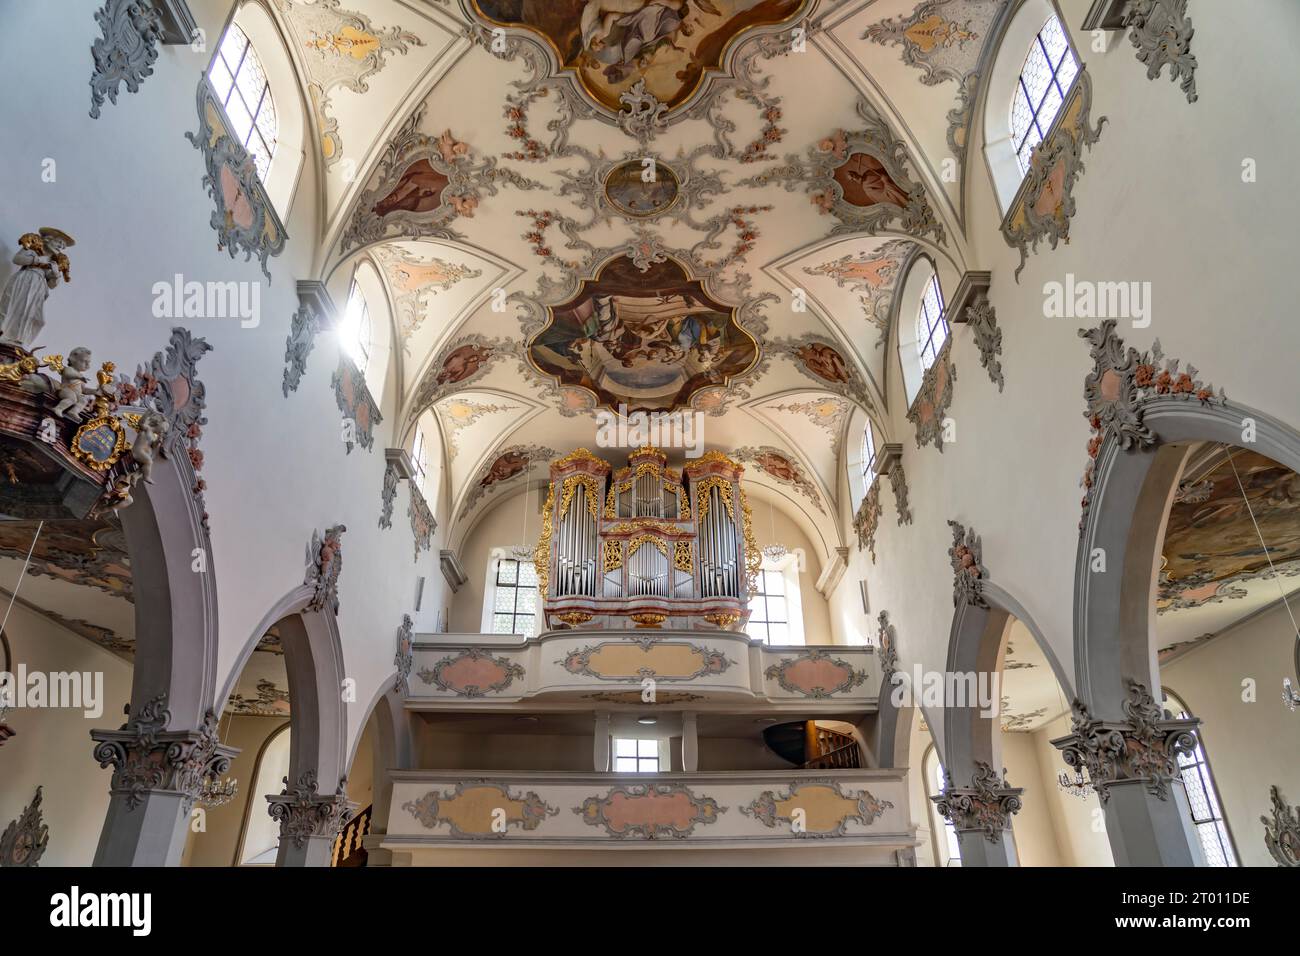 Kirchenorgel und Deckenfresko im Innenraum der Stadtkirche Laufenburg, Aargau, Schweiz, Europa |   Church organ and ceiling fresco of the Laufenburg p Stock Photo